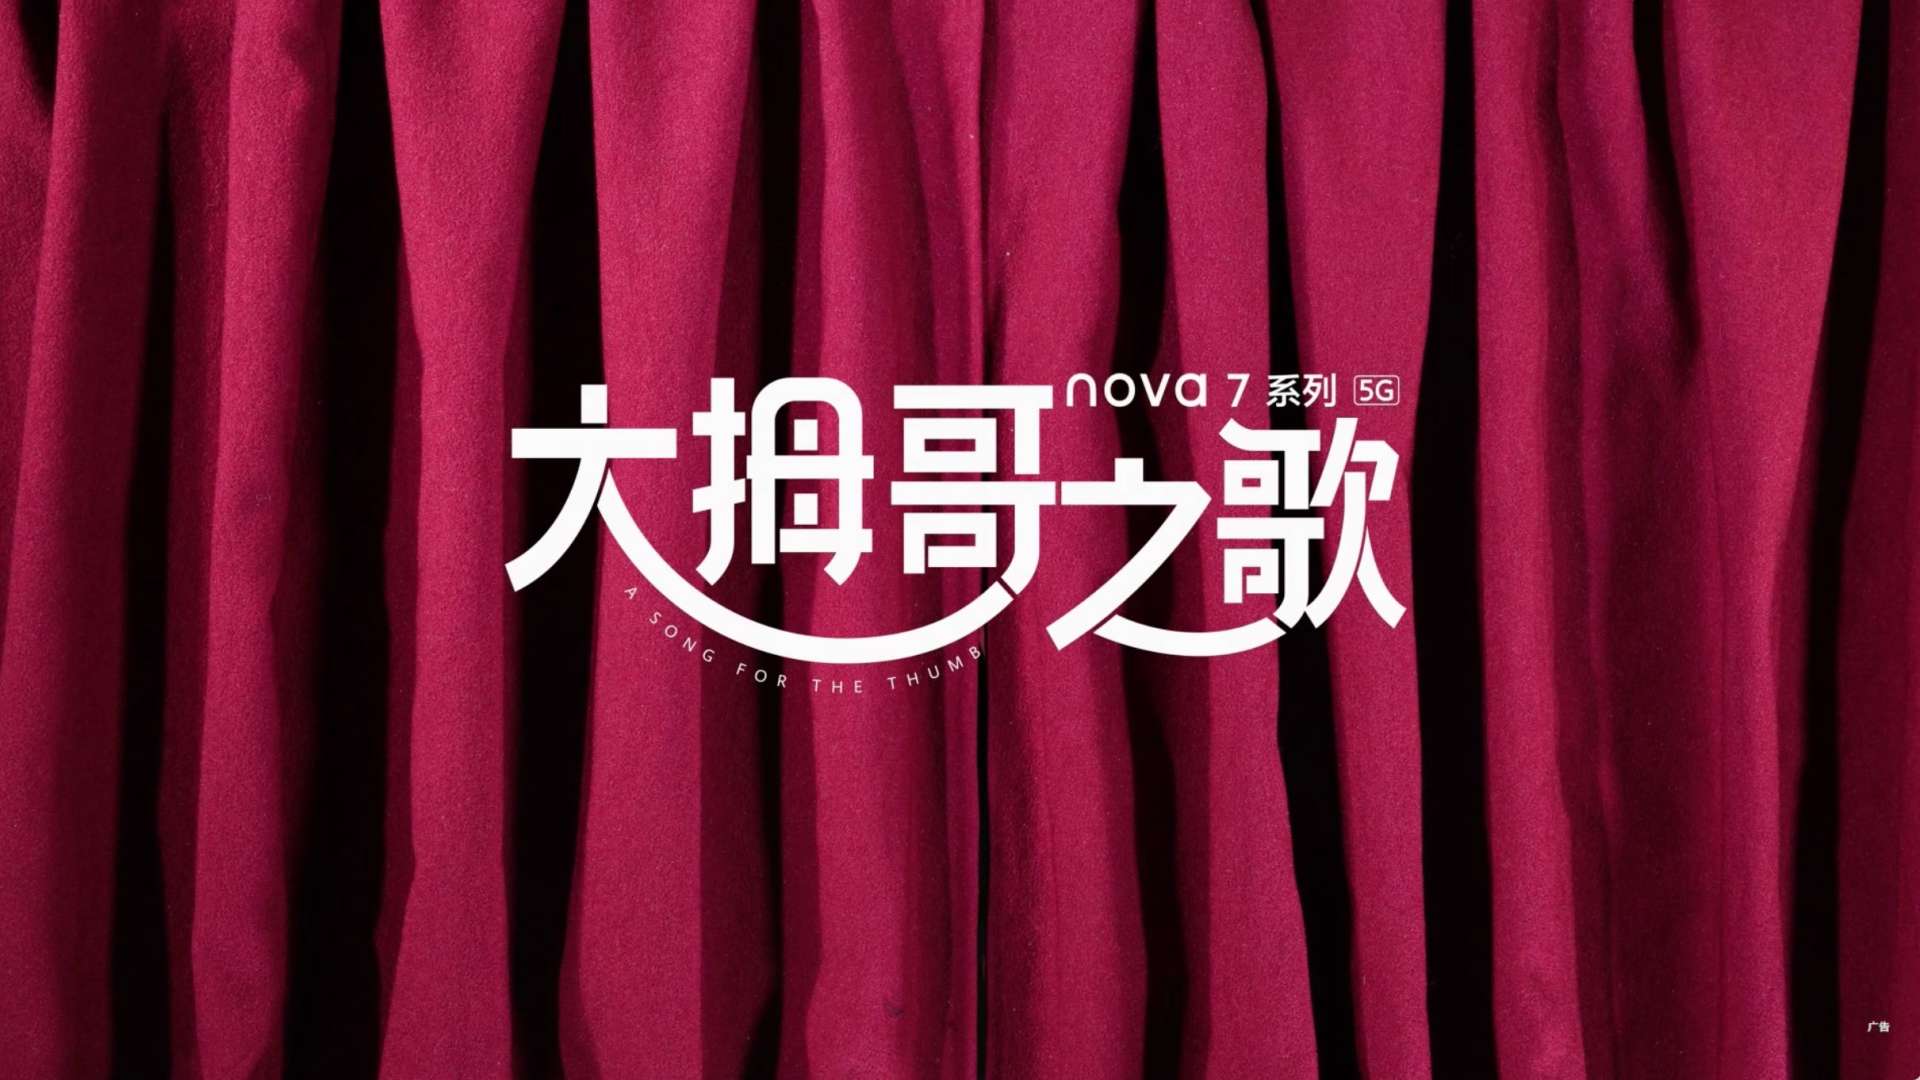 华为nova7定格动画-大拇哥之歌